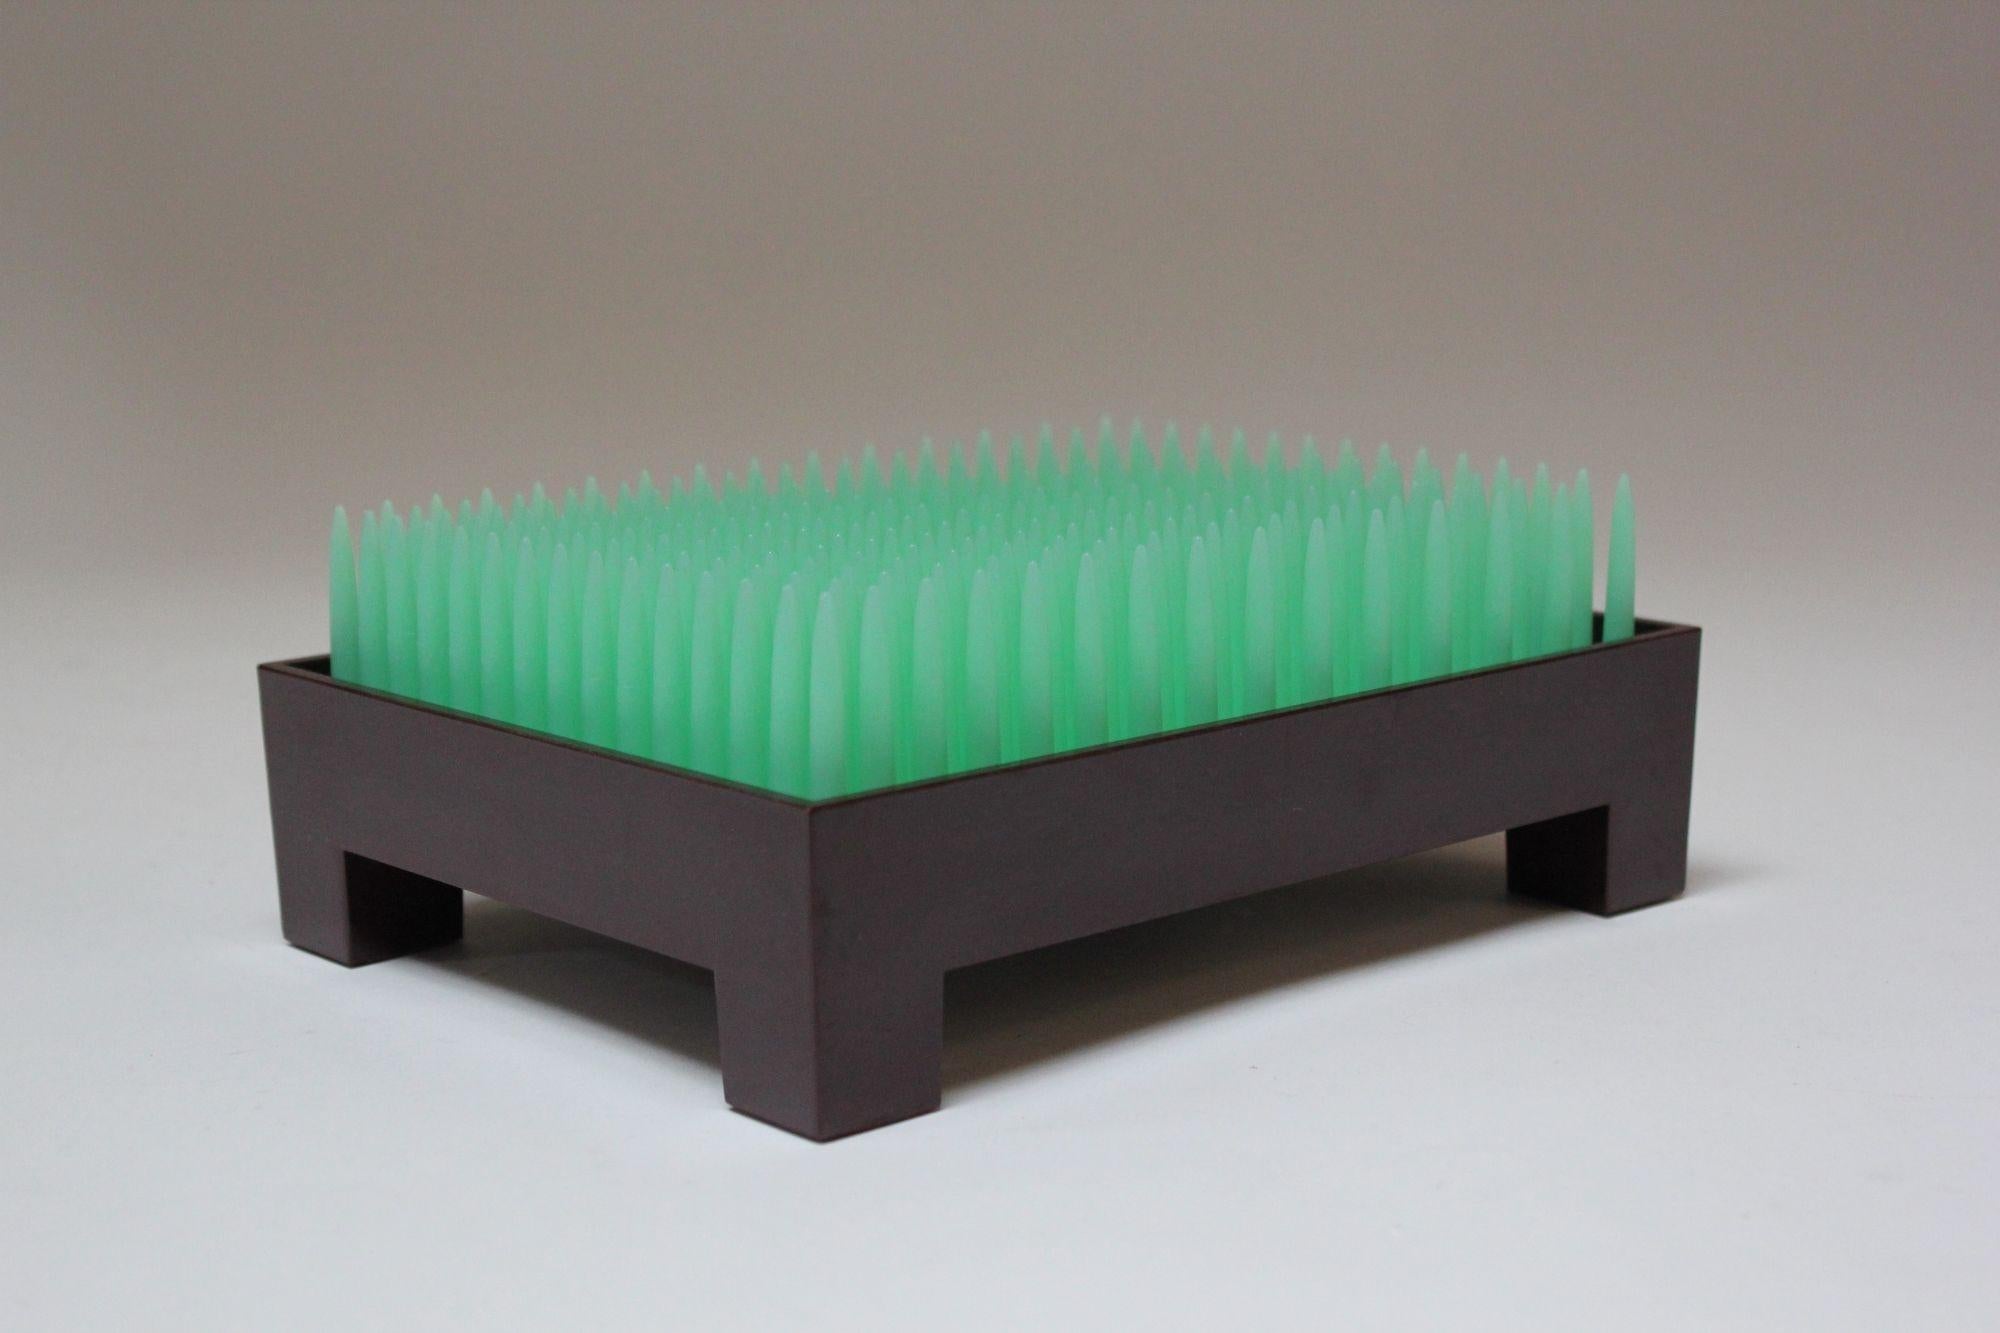 Der Liberte Briefhalter/Schreibtischaufsteller/Briefumschlagkasten wurde vom französischen Industriedesigner/Architekten Philippe Starck für Alessi (Portugal, 1992) entworfen.
Die grüne Kunststoffplatte, die von einem kastanienbraunen Bakelit-Sockel